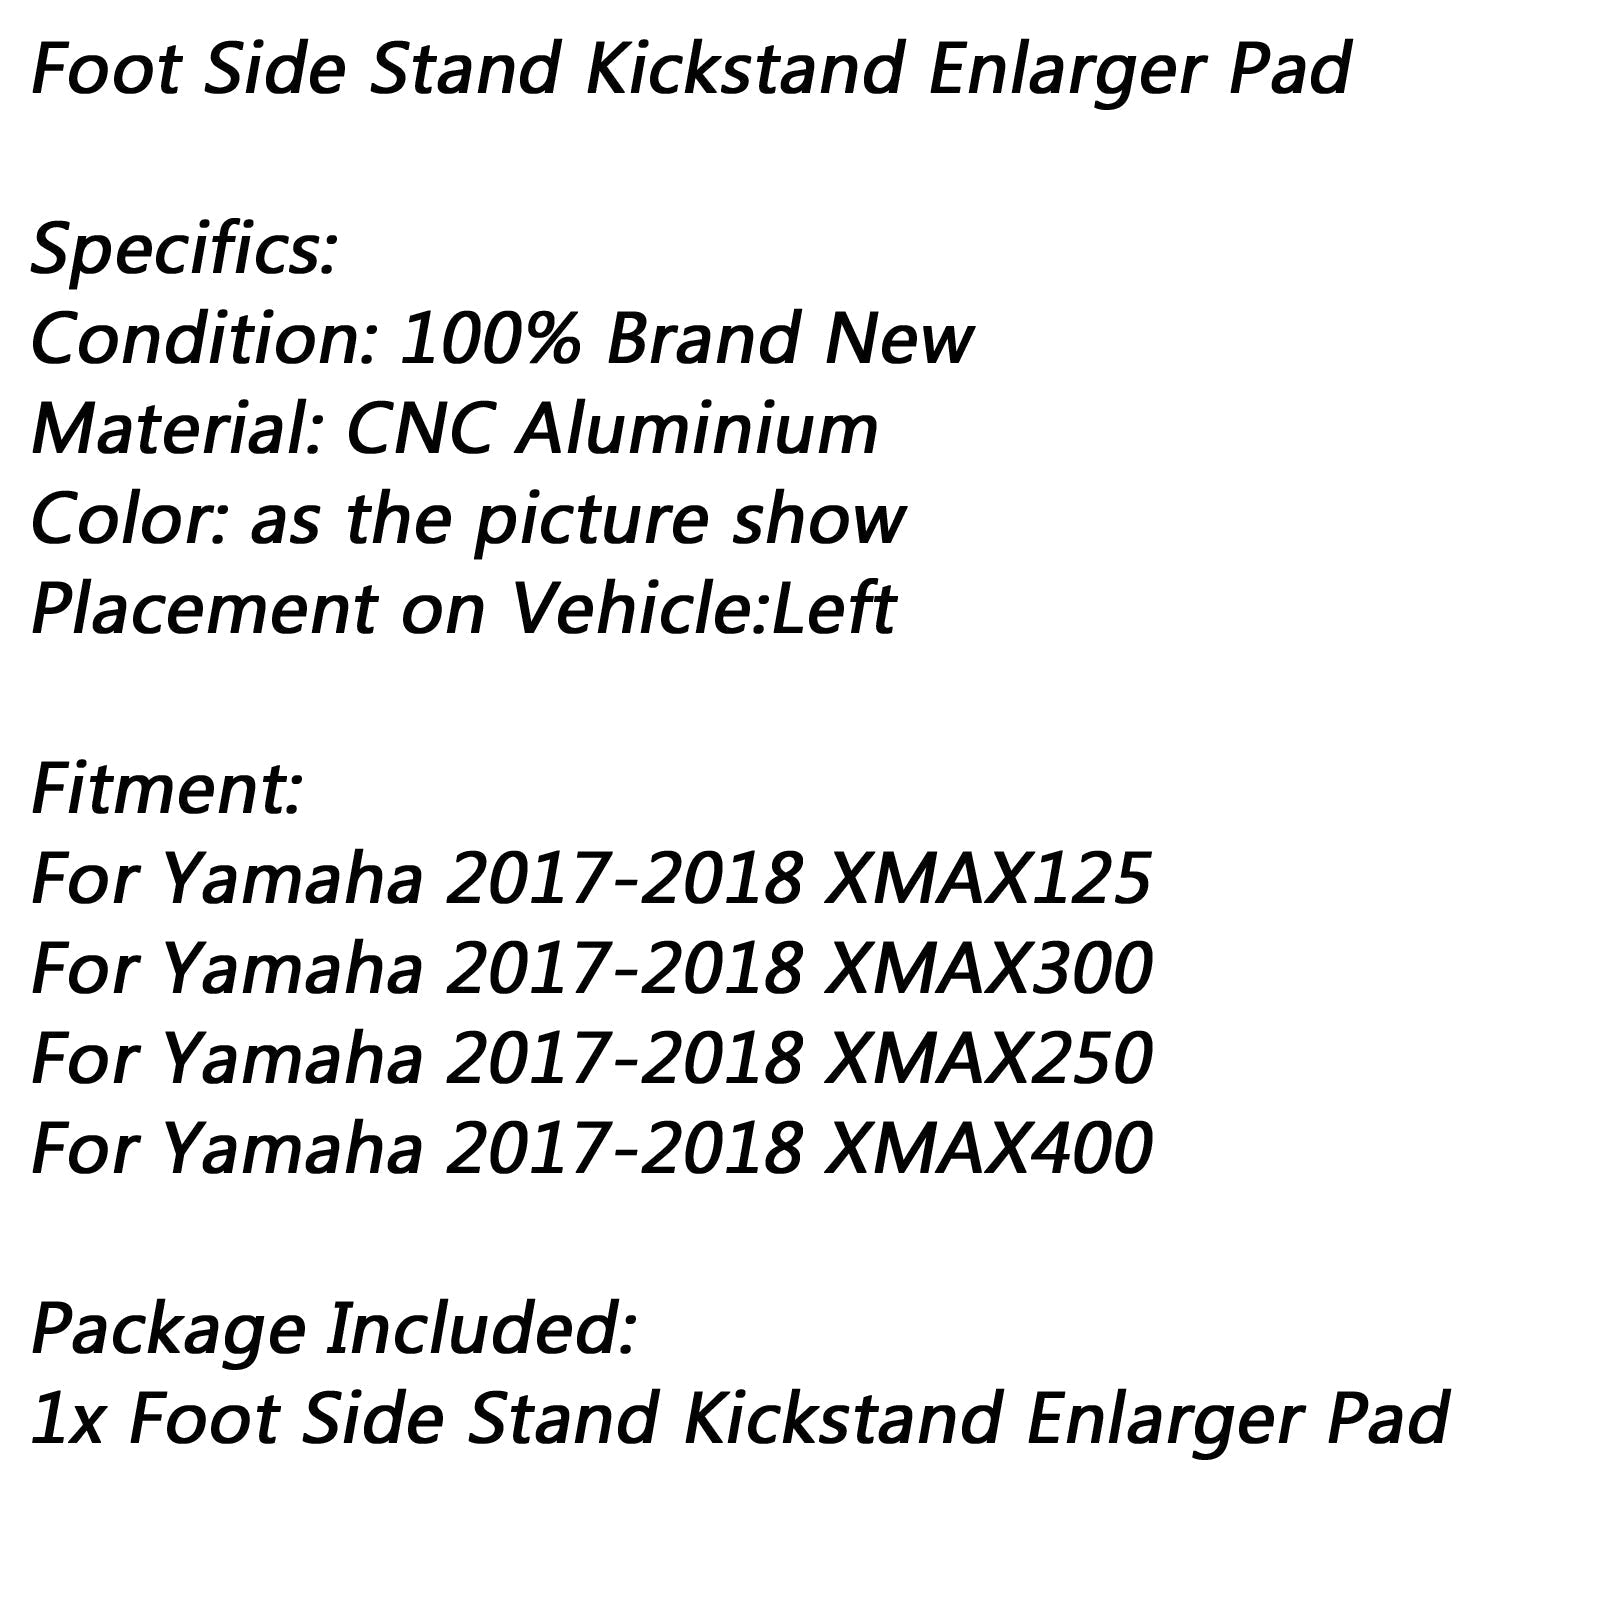 Soporte de placa de extensión de soporte lateral para Yamaha 17-18 XMAX300 400 250 125 genérico